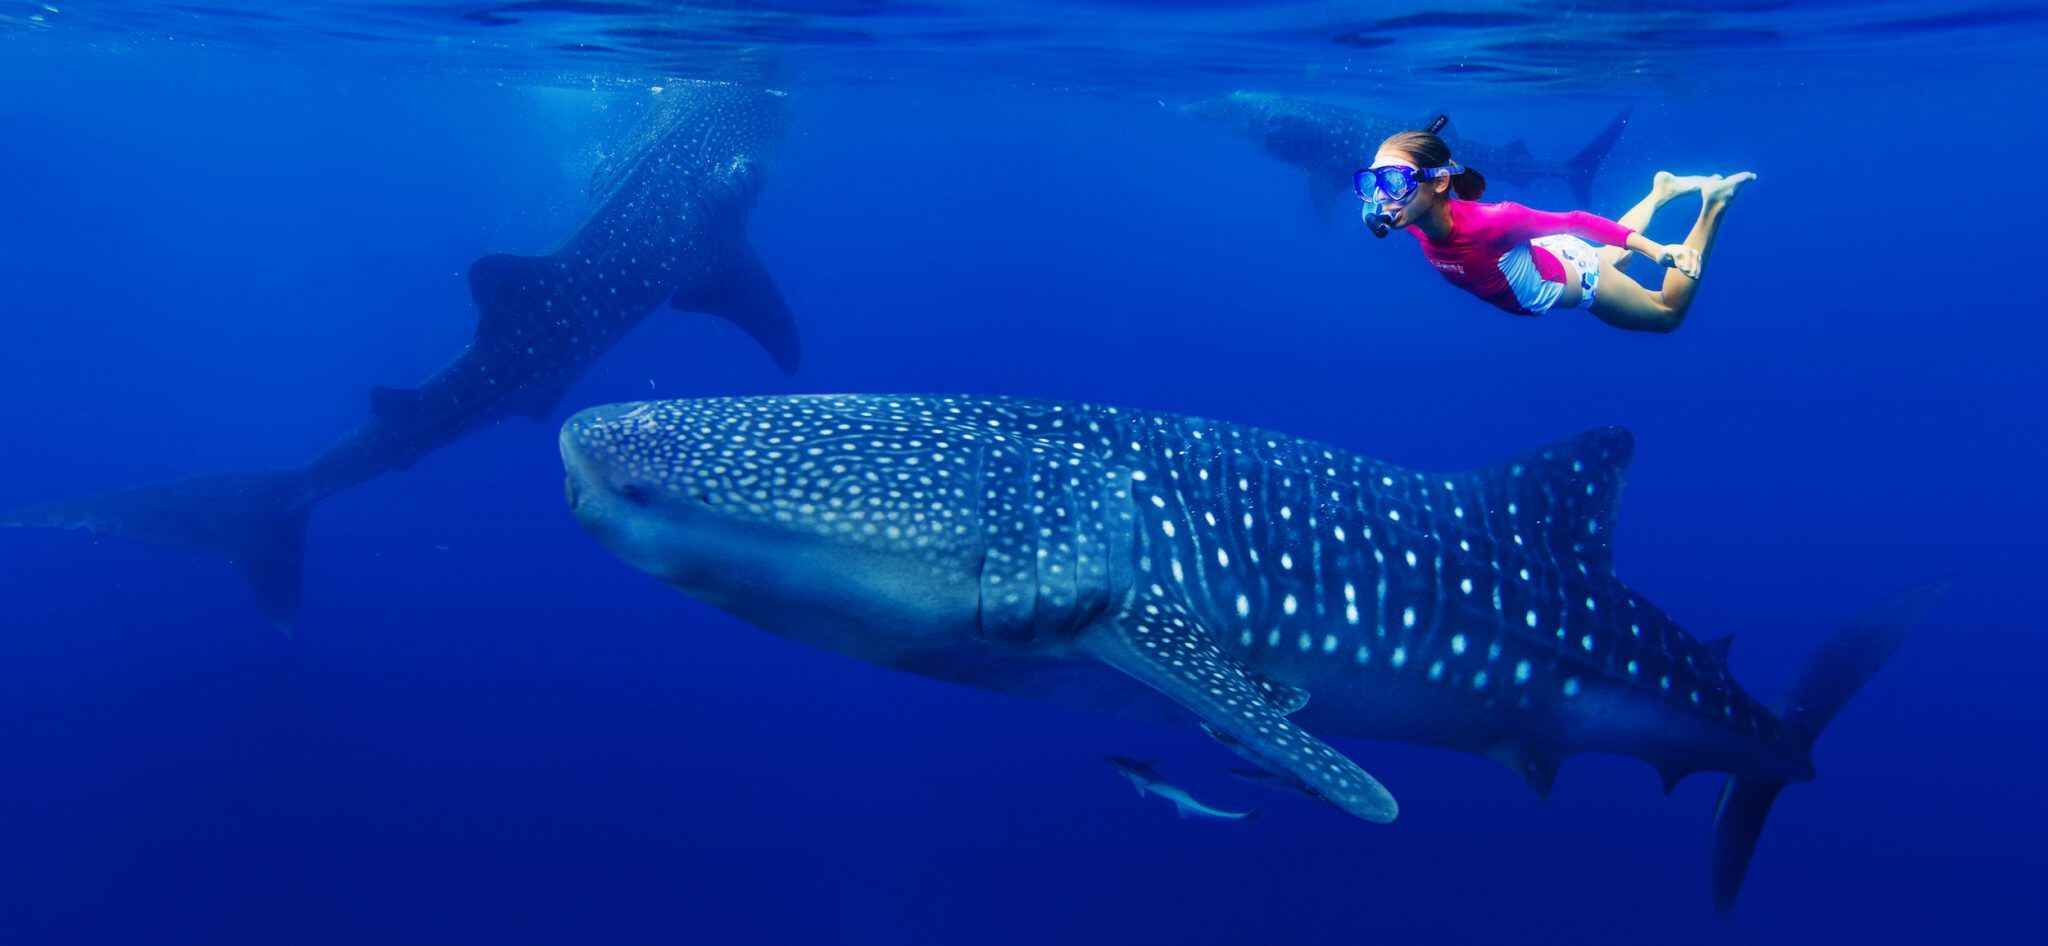 10 Resorts Mantas & Whale Sharks In Maldives